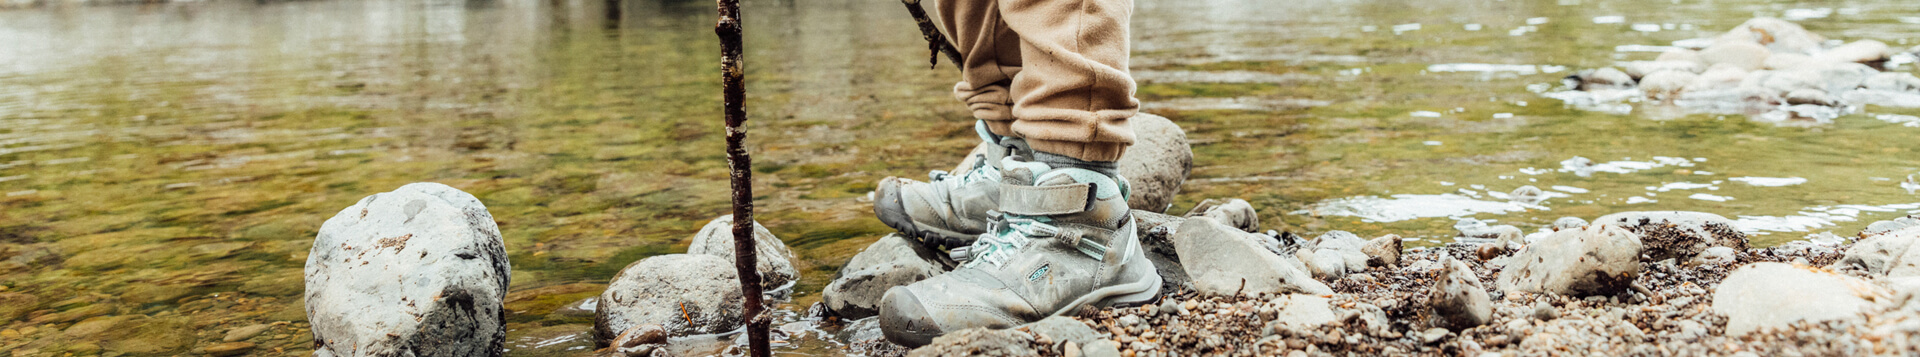 Odpowiednie buty trekkingowe dla dzieci to podstawa i bezpieczeństwo podczas wędrówek